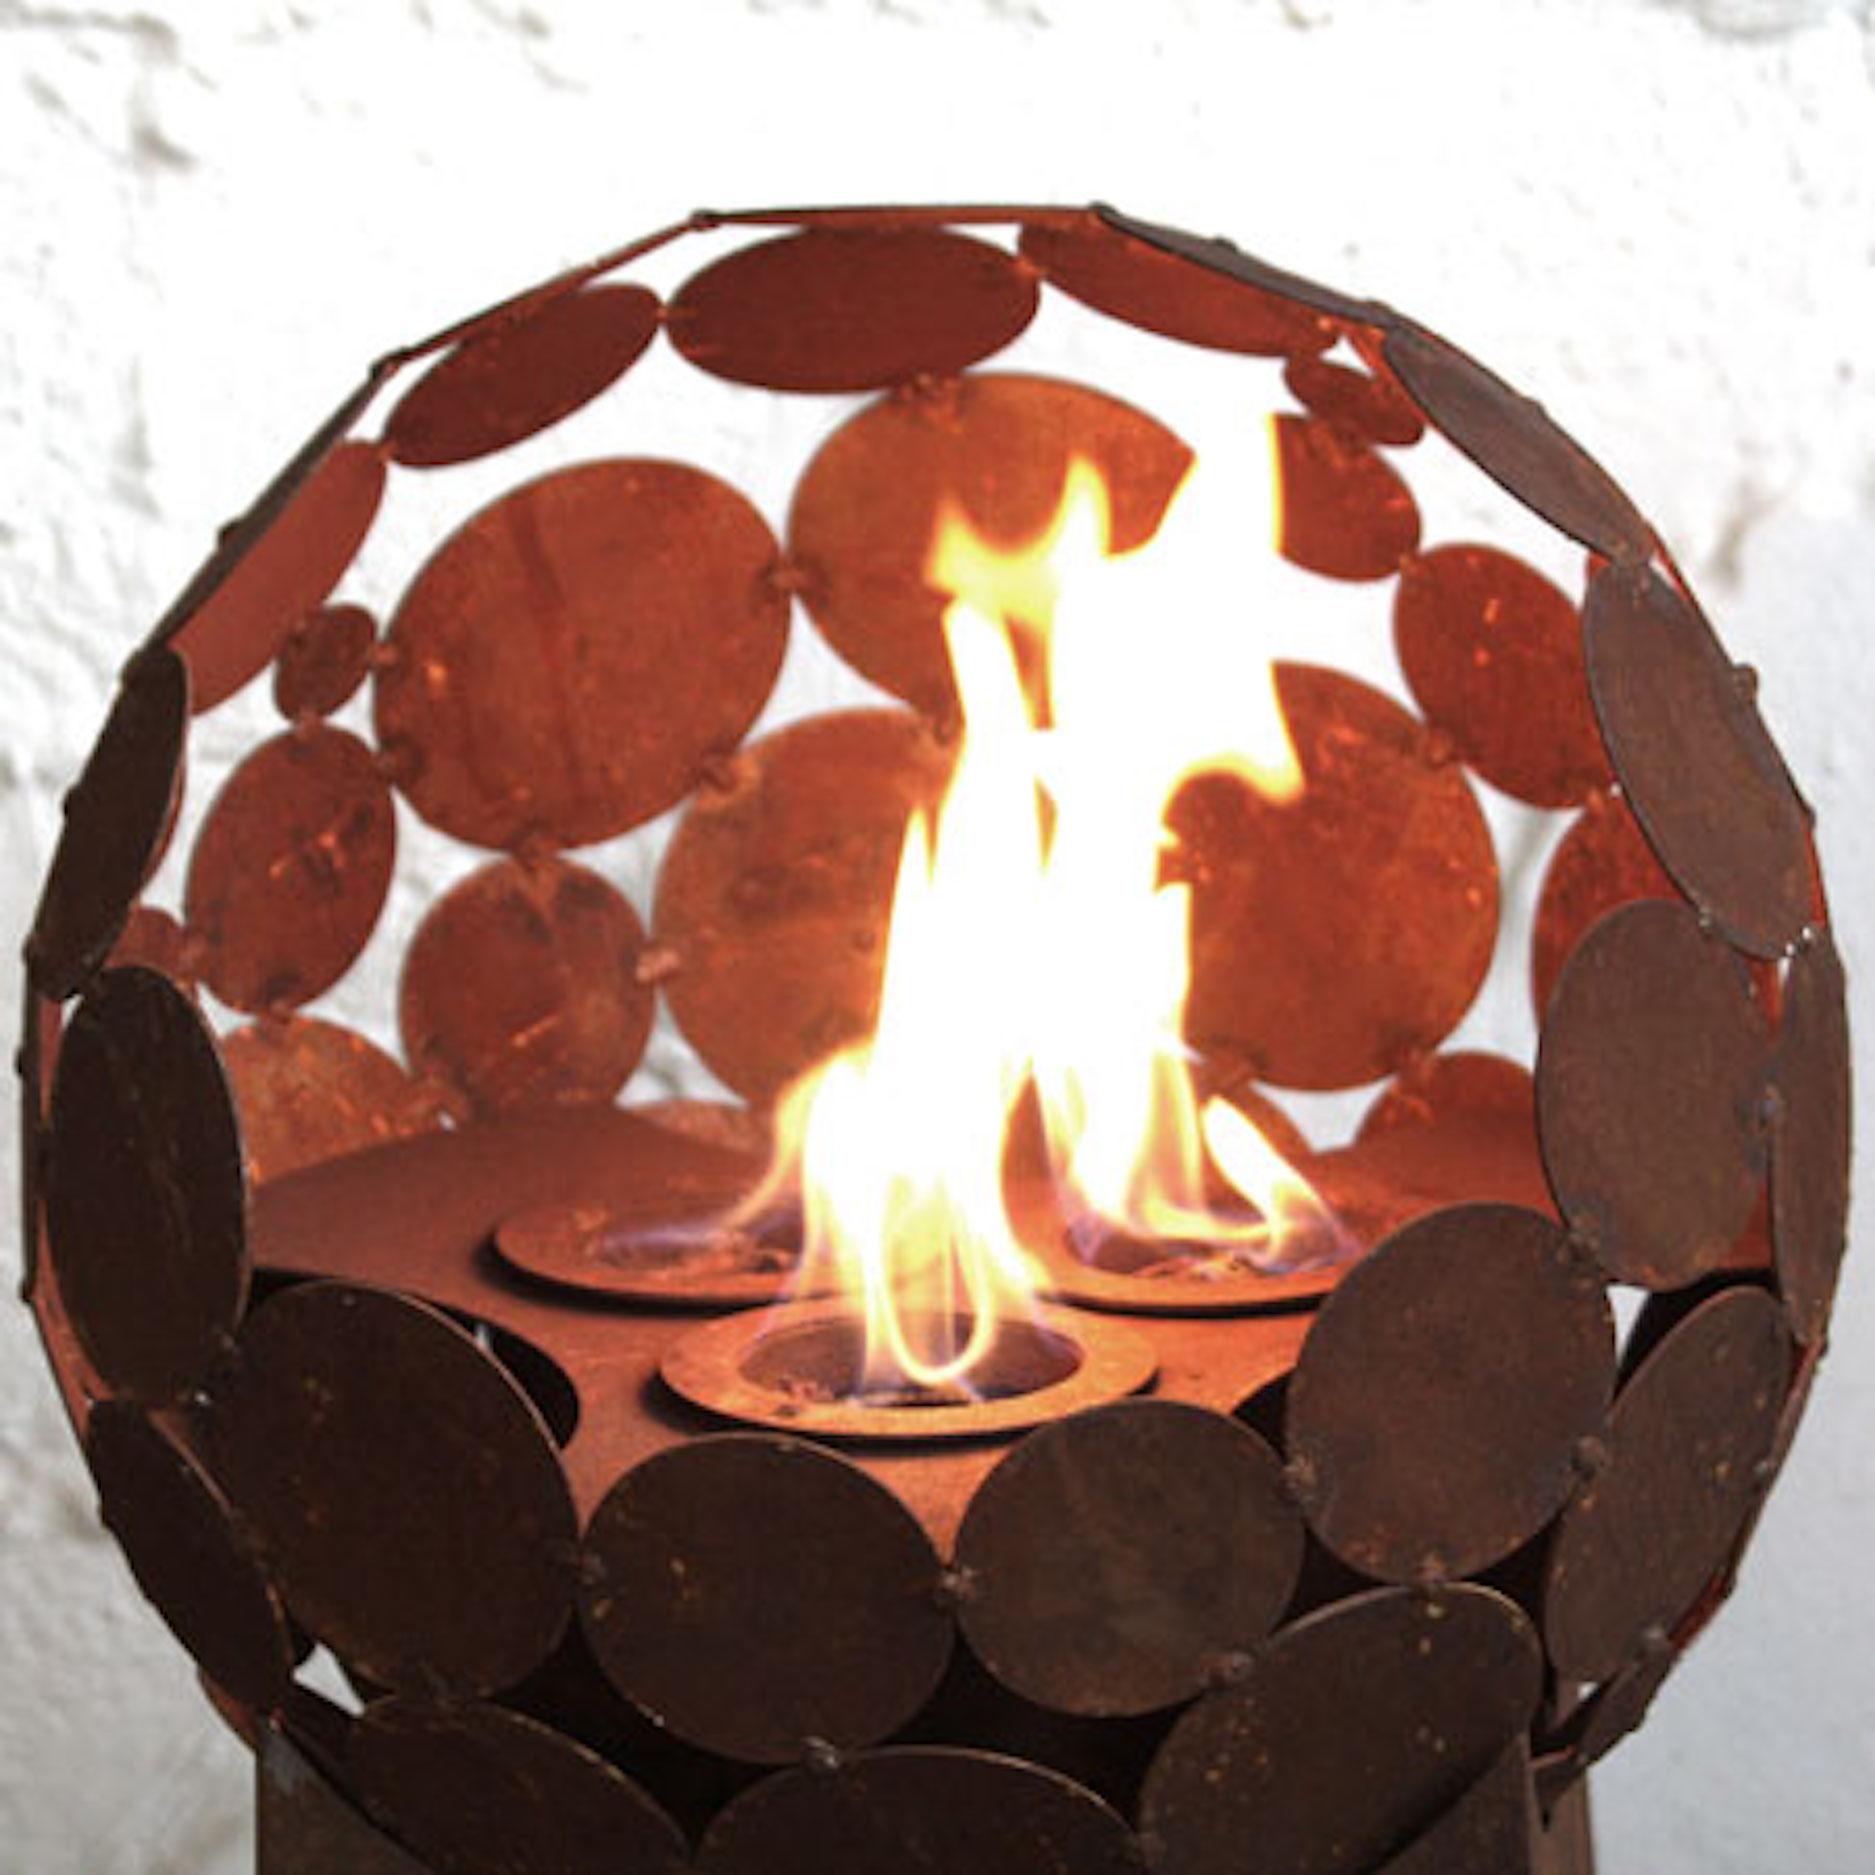 Burner set with 3 burners for Globe d=40cm - Modern Sculpture by Stefan Traloc